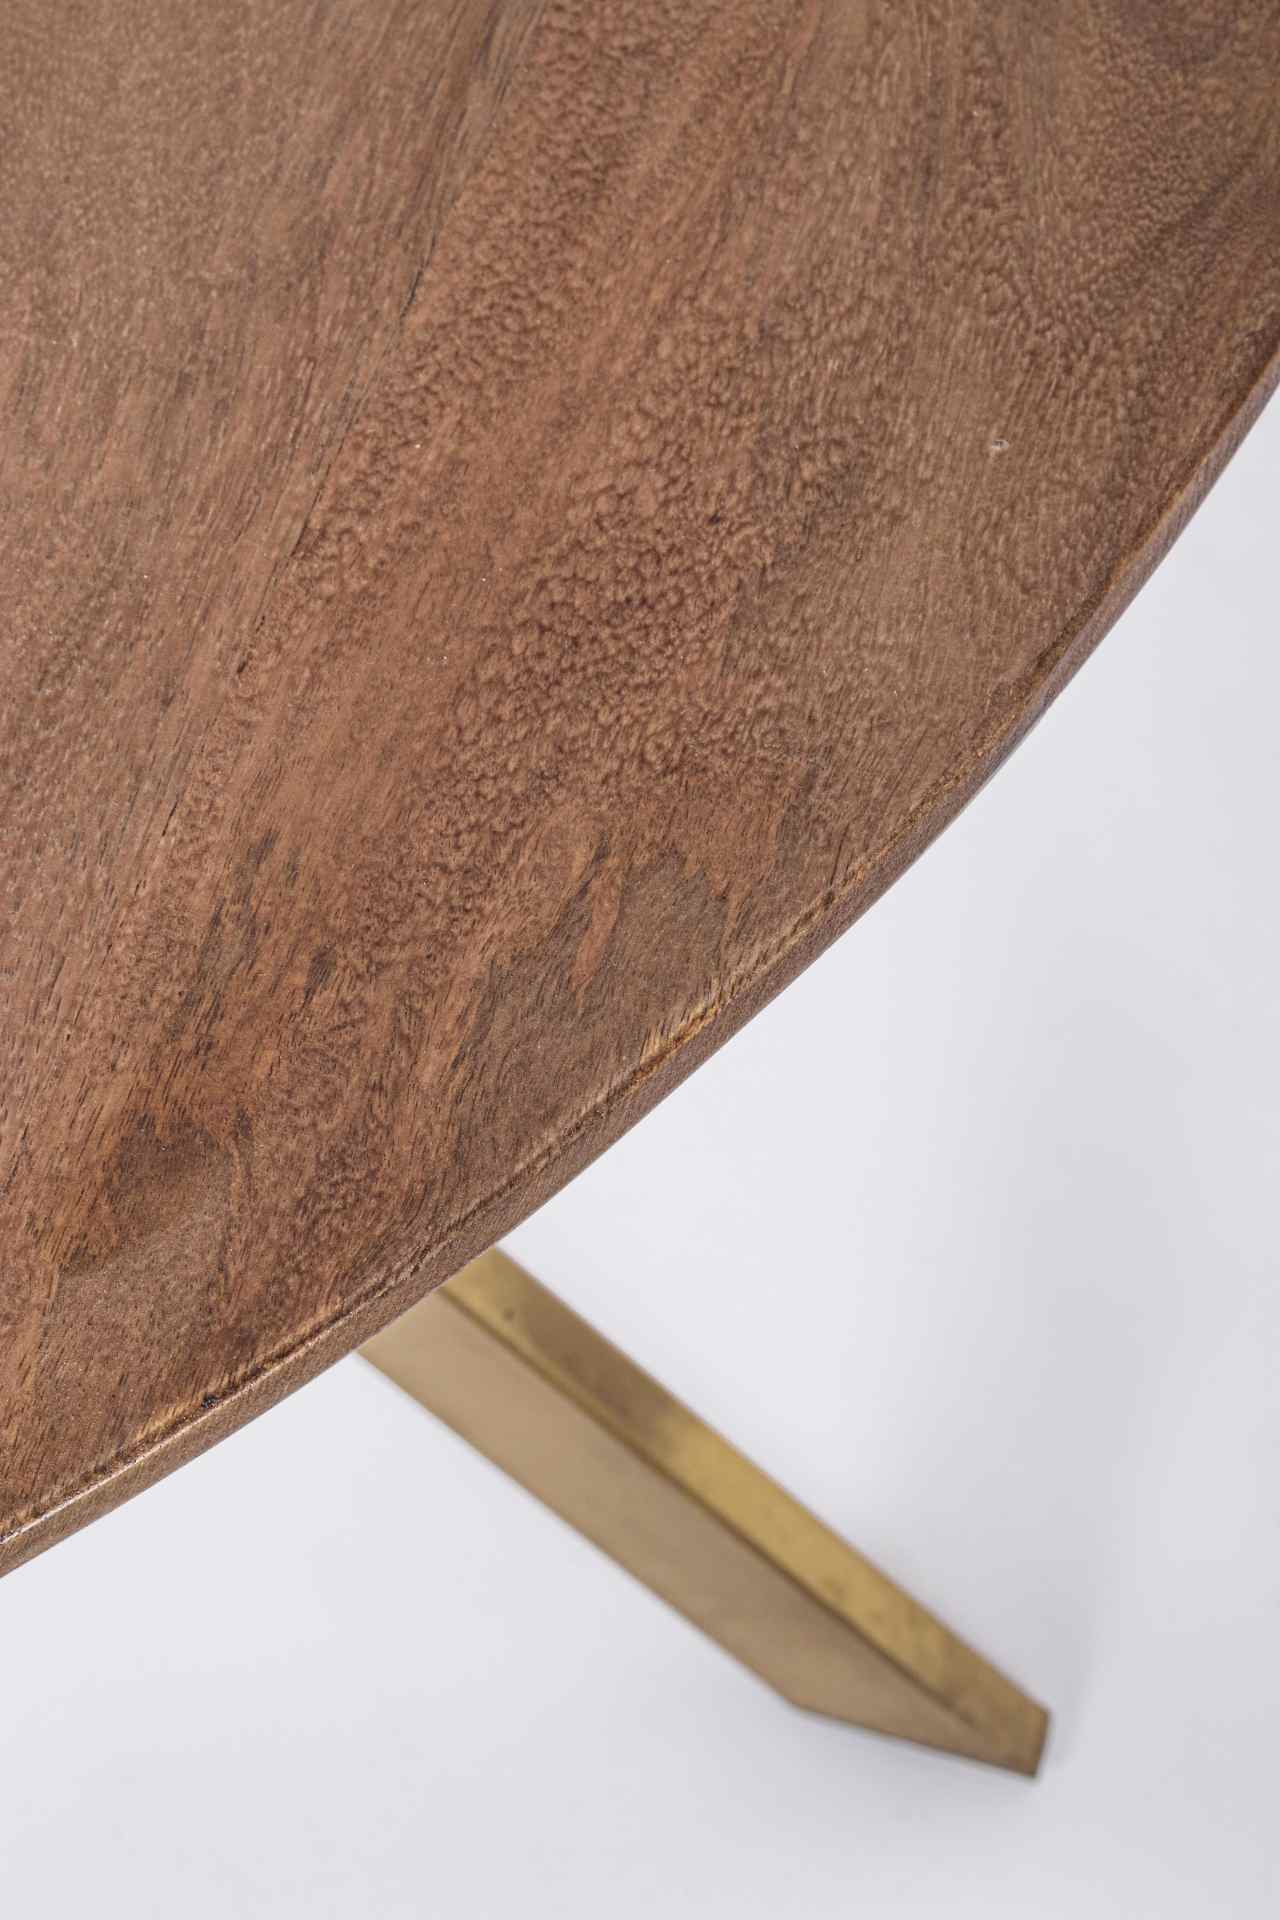 Der Esstisch Sherman überzeugt mit seinem klassischem Design. Gefertigt wurde er aus Mangoholz, welches einen natürlichen Farbton besitzt. Das Gestell ist aus Metall und hat eine goldene Farbe. Das Tisch hat einen Durchmesser von 120 cm.